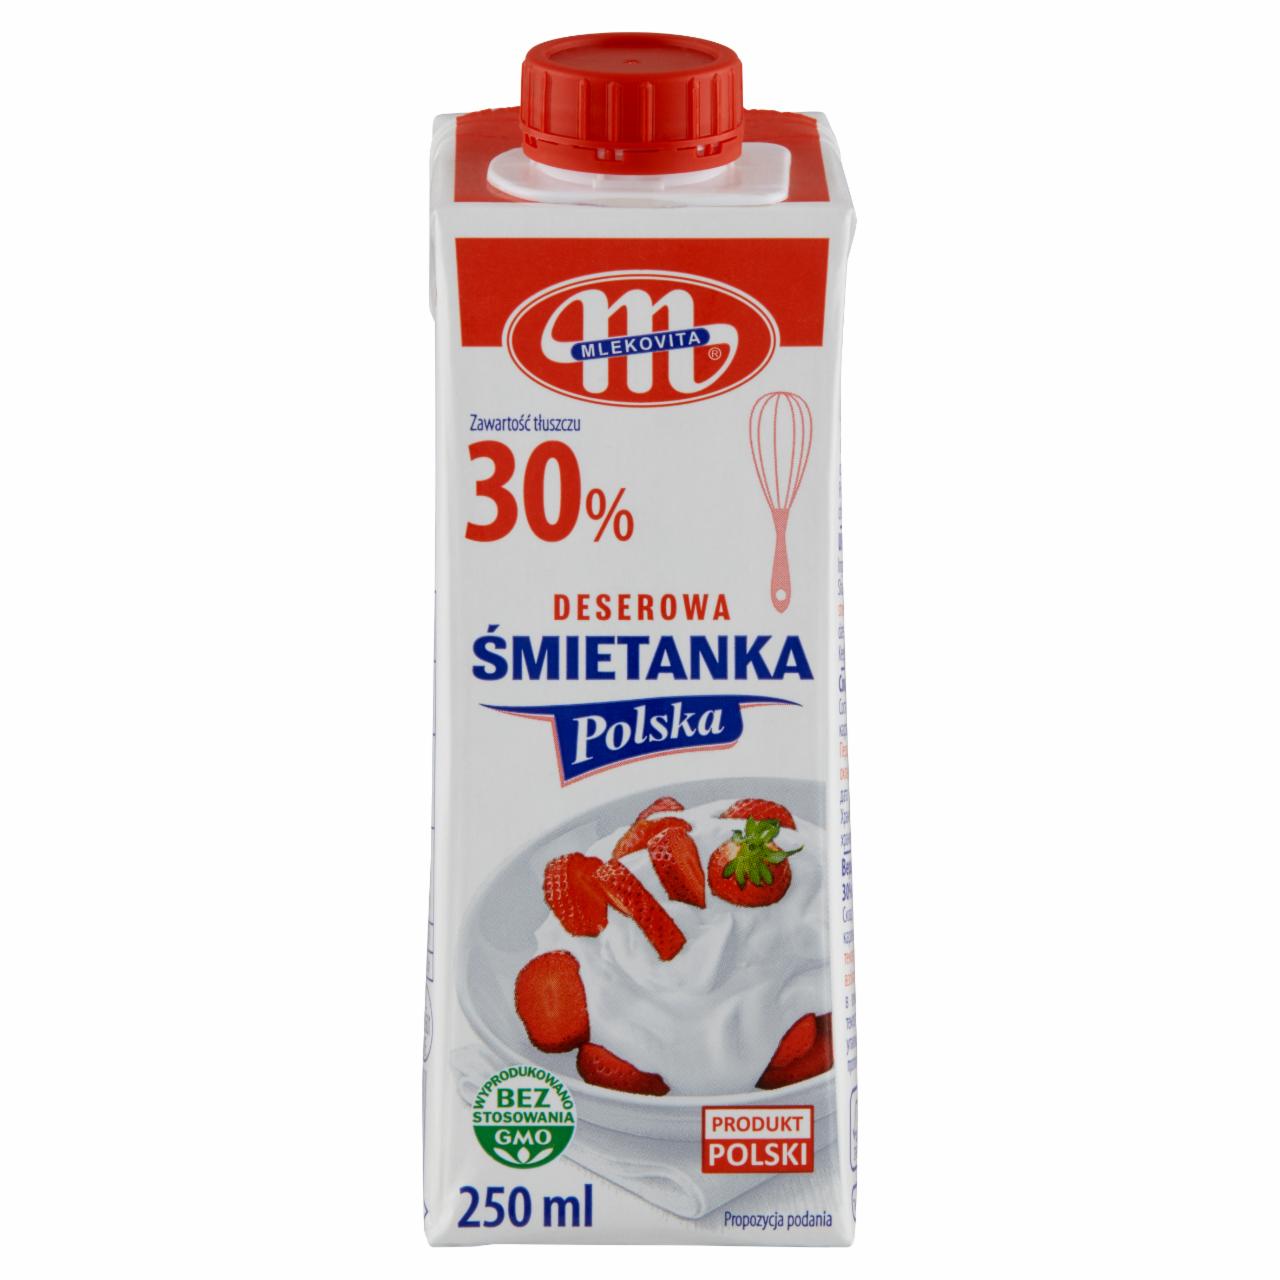 Zdjęcia - Mlekovita Śmietanka Polska deserowa 30% 250 ml